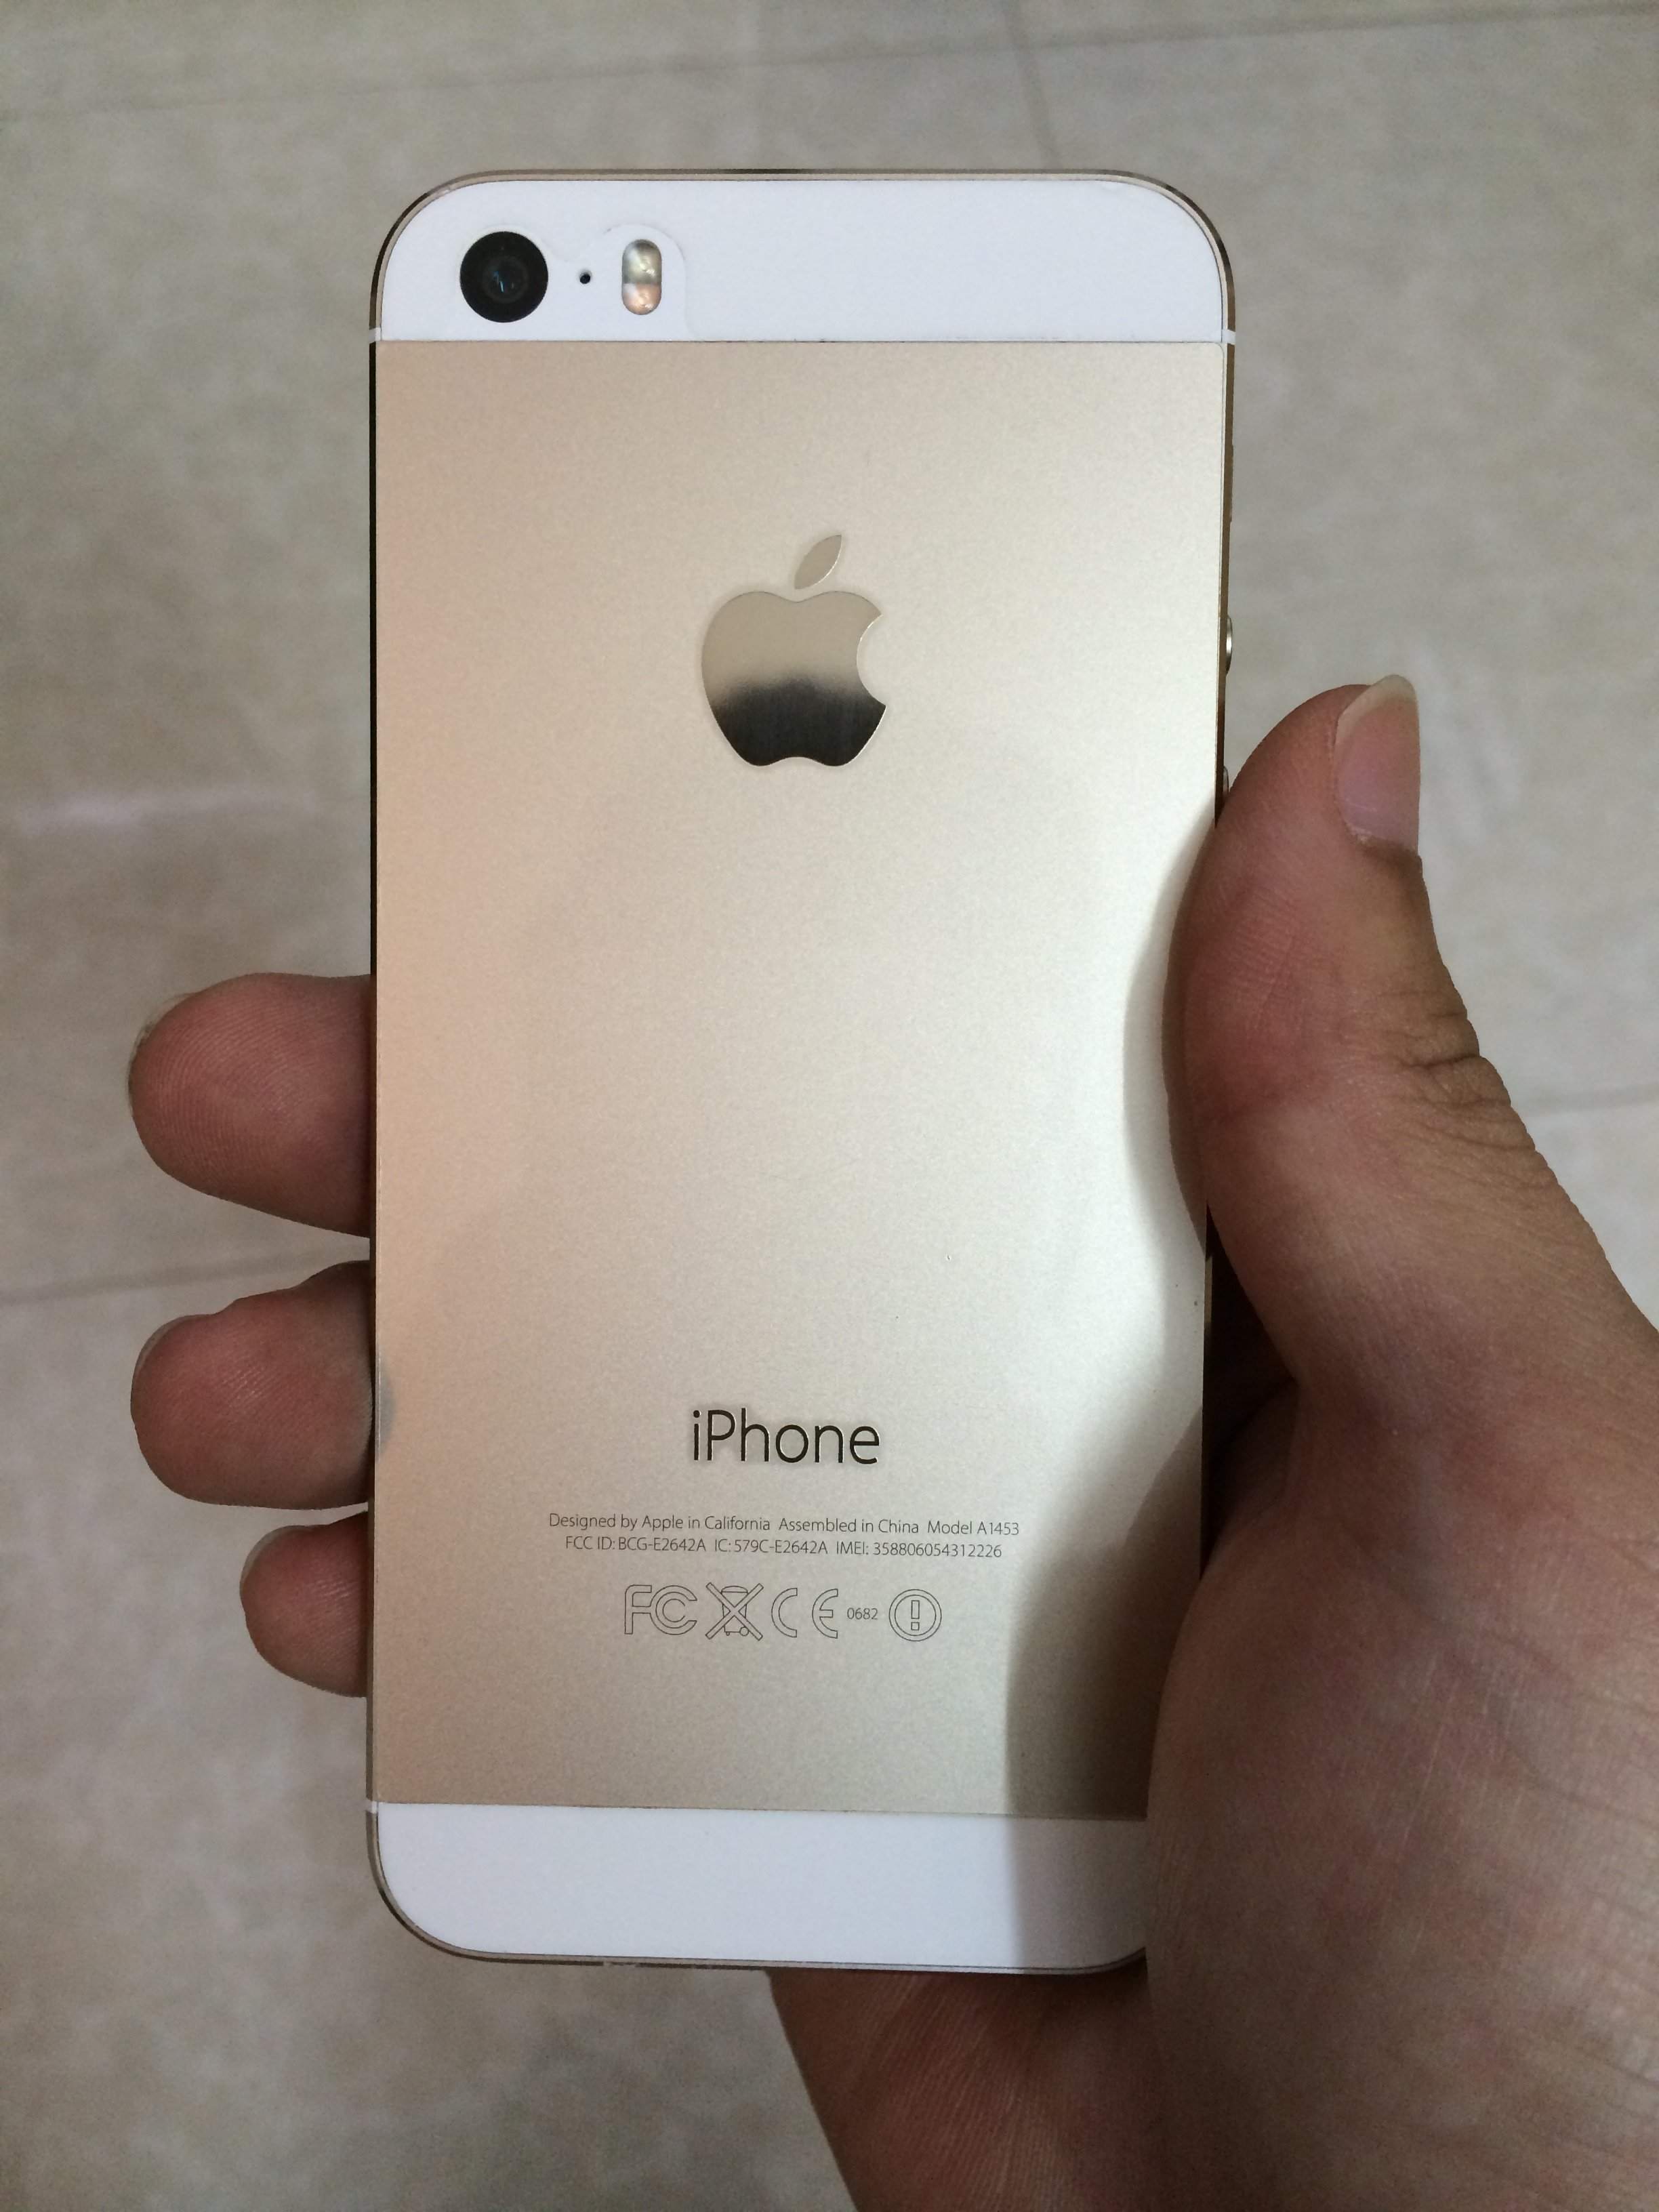 iPhone 5s gold lock Docomo: Sẵn sàng cho một trải nghiệm hoàn toàn mới với iPhone 5s màu vàng Docomo! Với khóa SIM Docomo tích hợp, giờ đây bạn có thể thoải mái sử dụng với mạng Docomo tại Nhật Bản. Bạn không nên bỏ lỡ cơ hội này, hãy xem ngay hình ảnh chi tiết để đảm bảo mình có được một sản phẩm chất lượng.